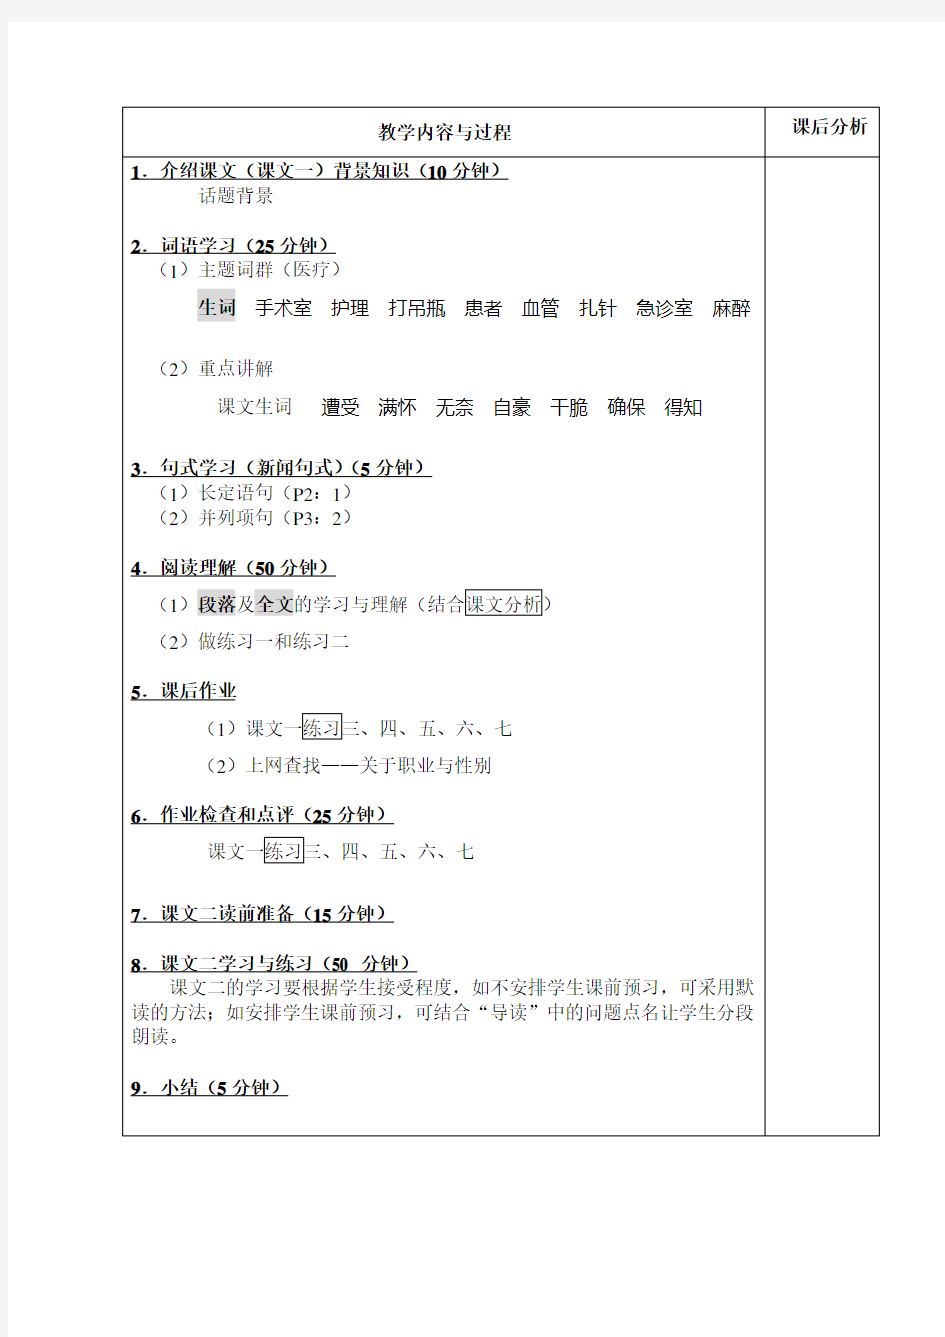 时代——中级汉语报刊阅读教程下册课程